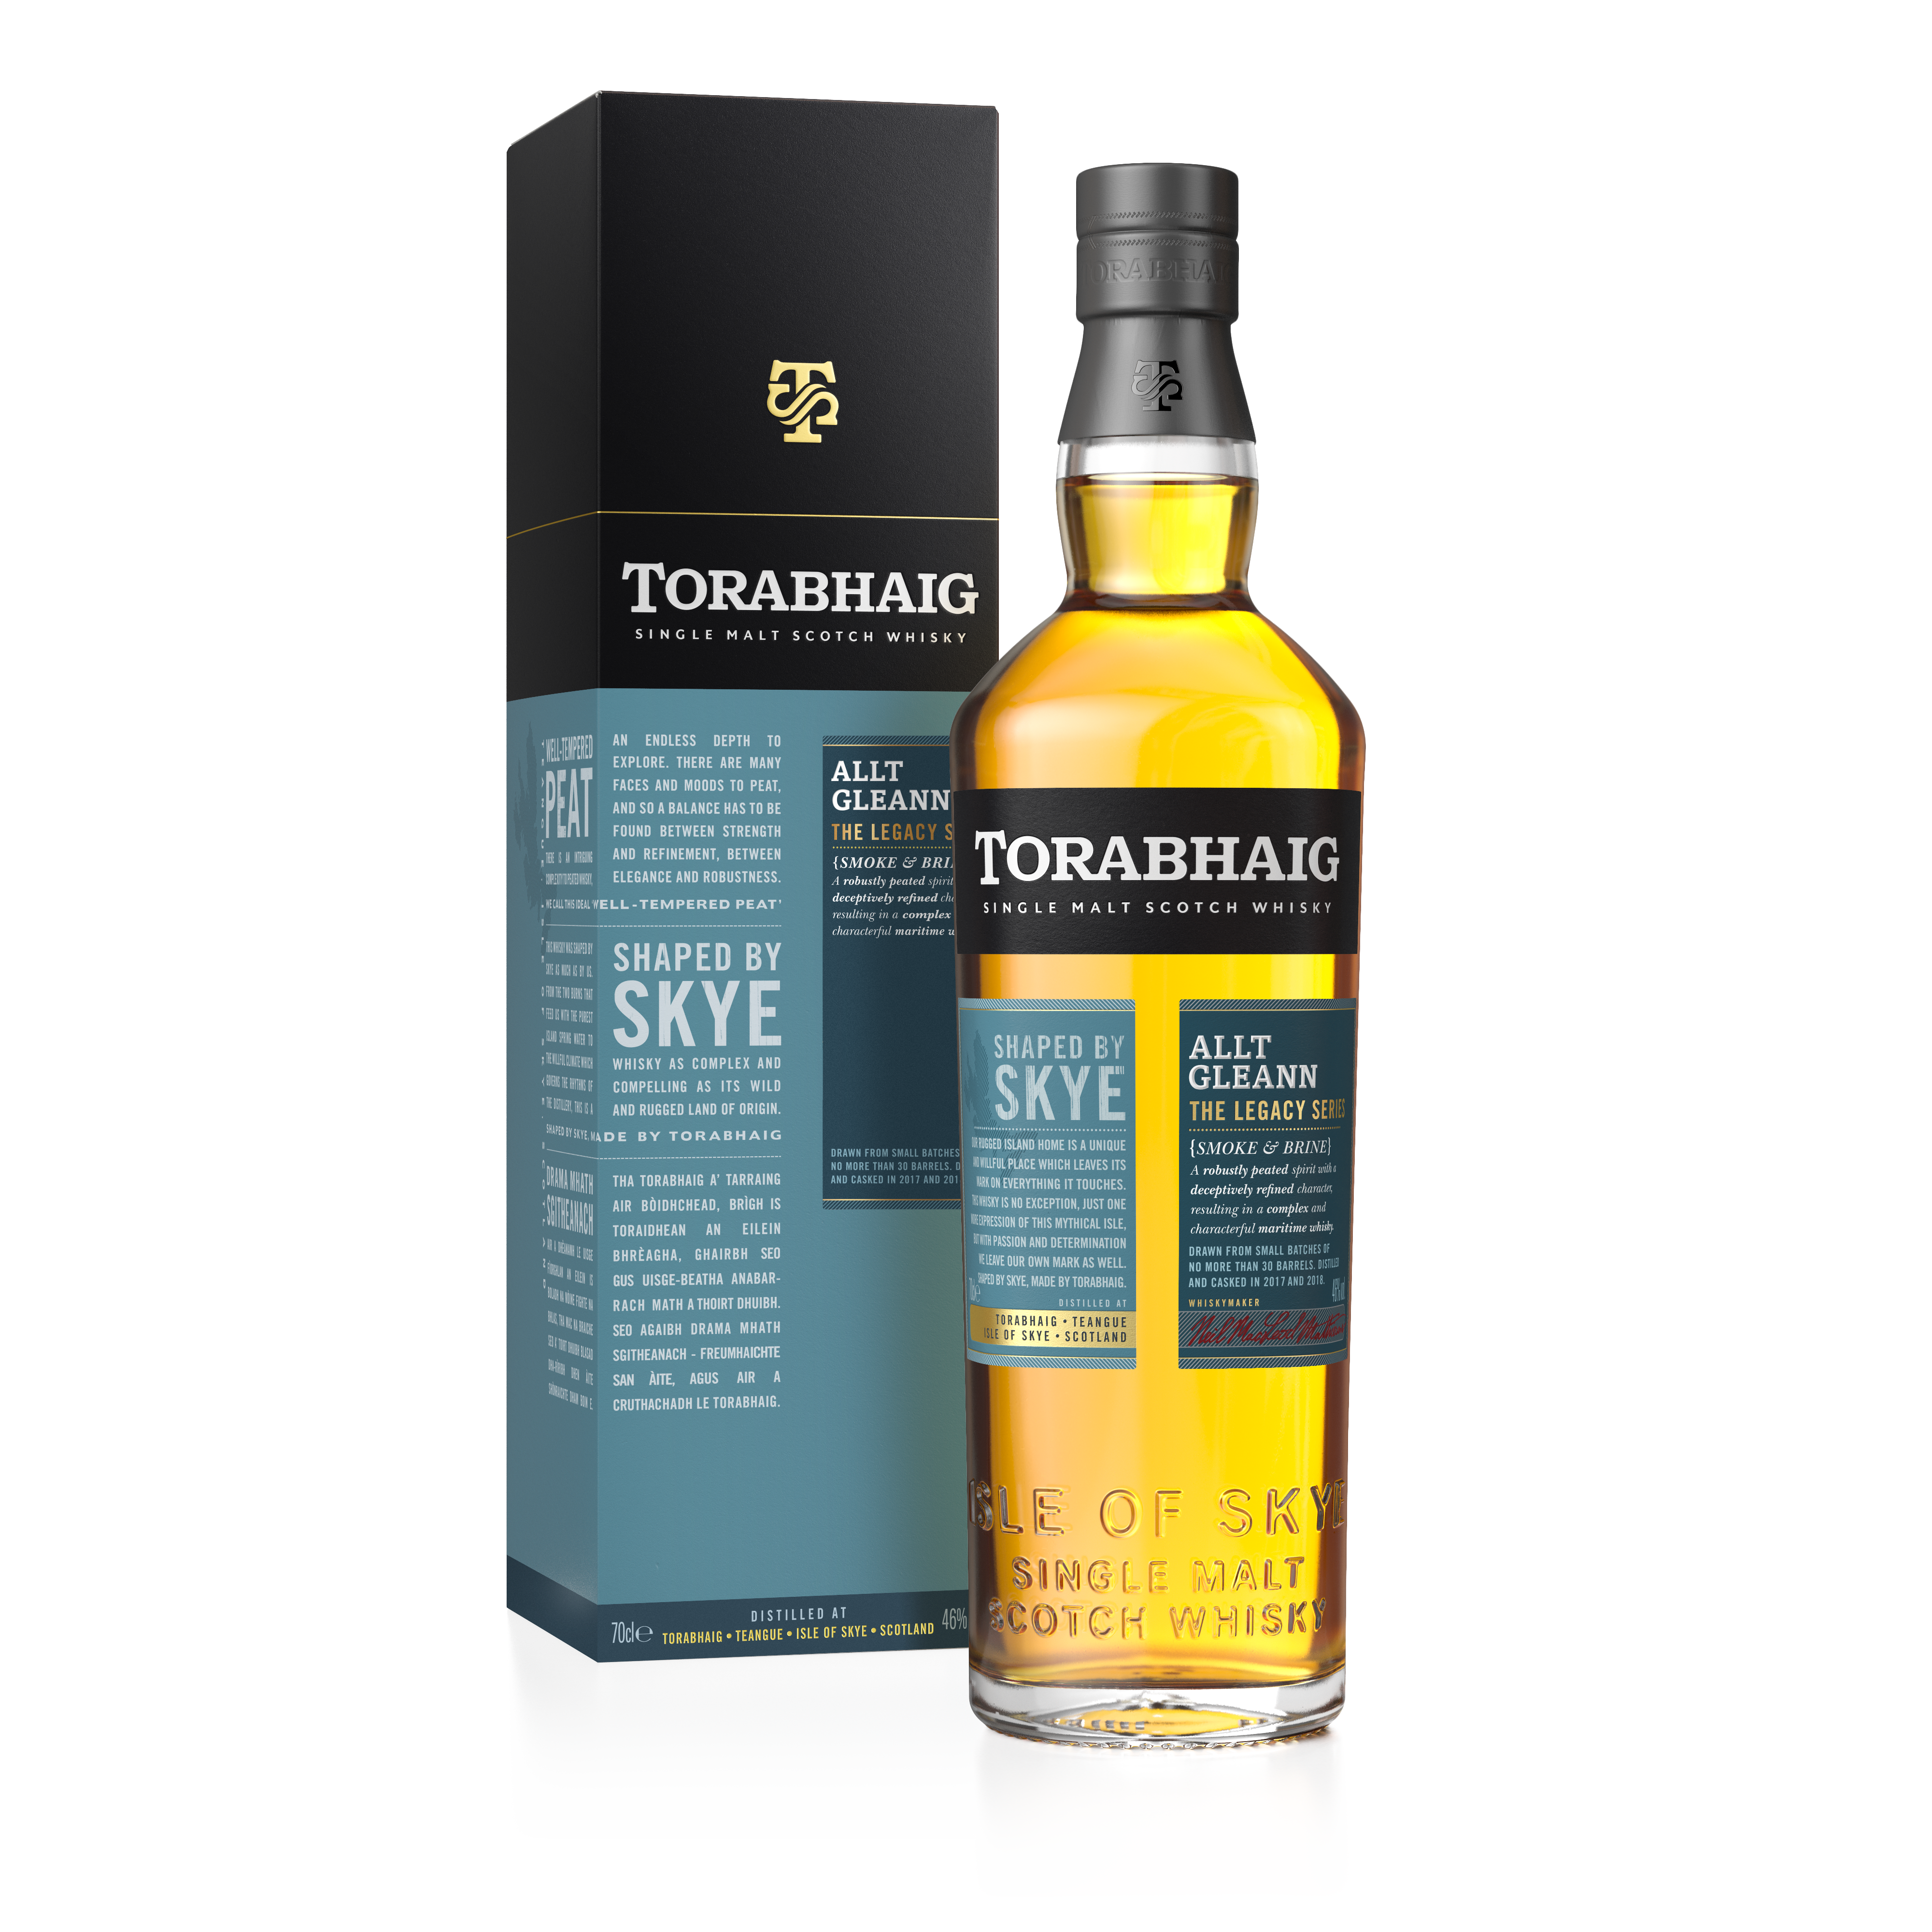 Torabhaig Single Malt - The - 2nd Gleann, Series Distillery Legacy Allt Torabhaig Edition